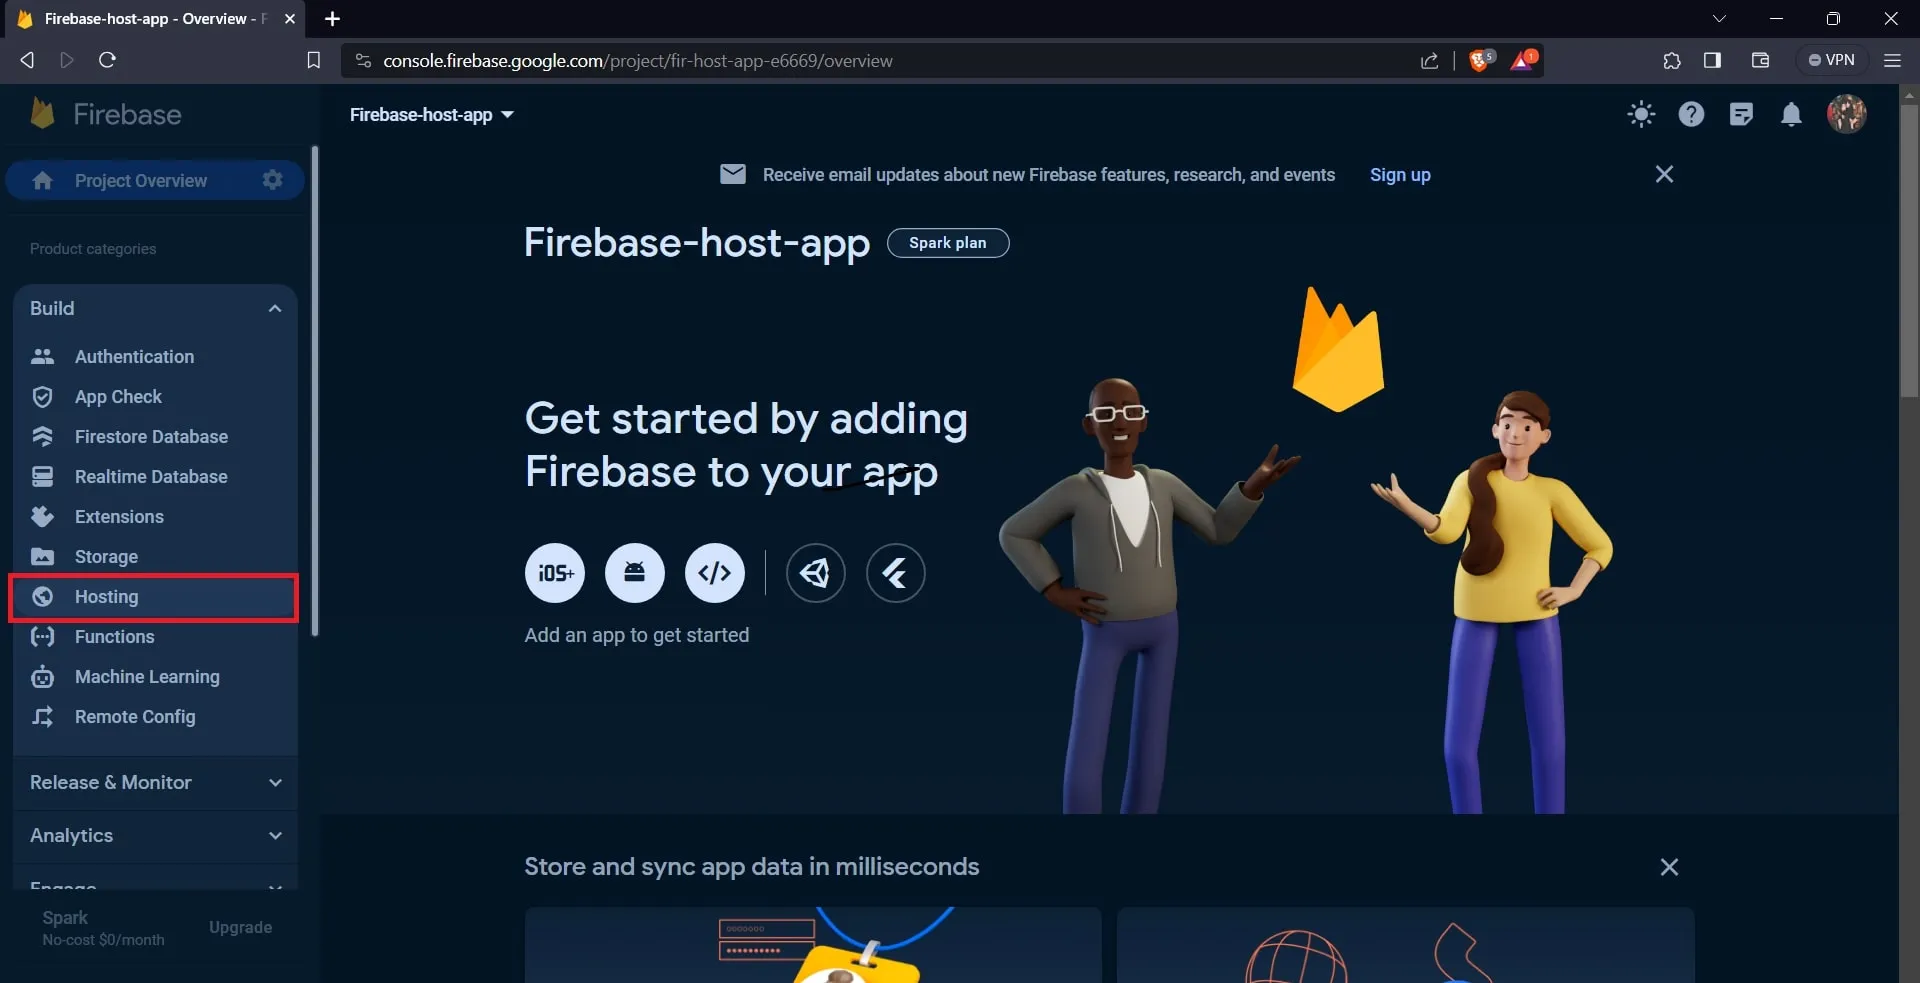 Firebase app dashboard